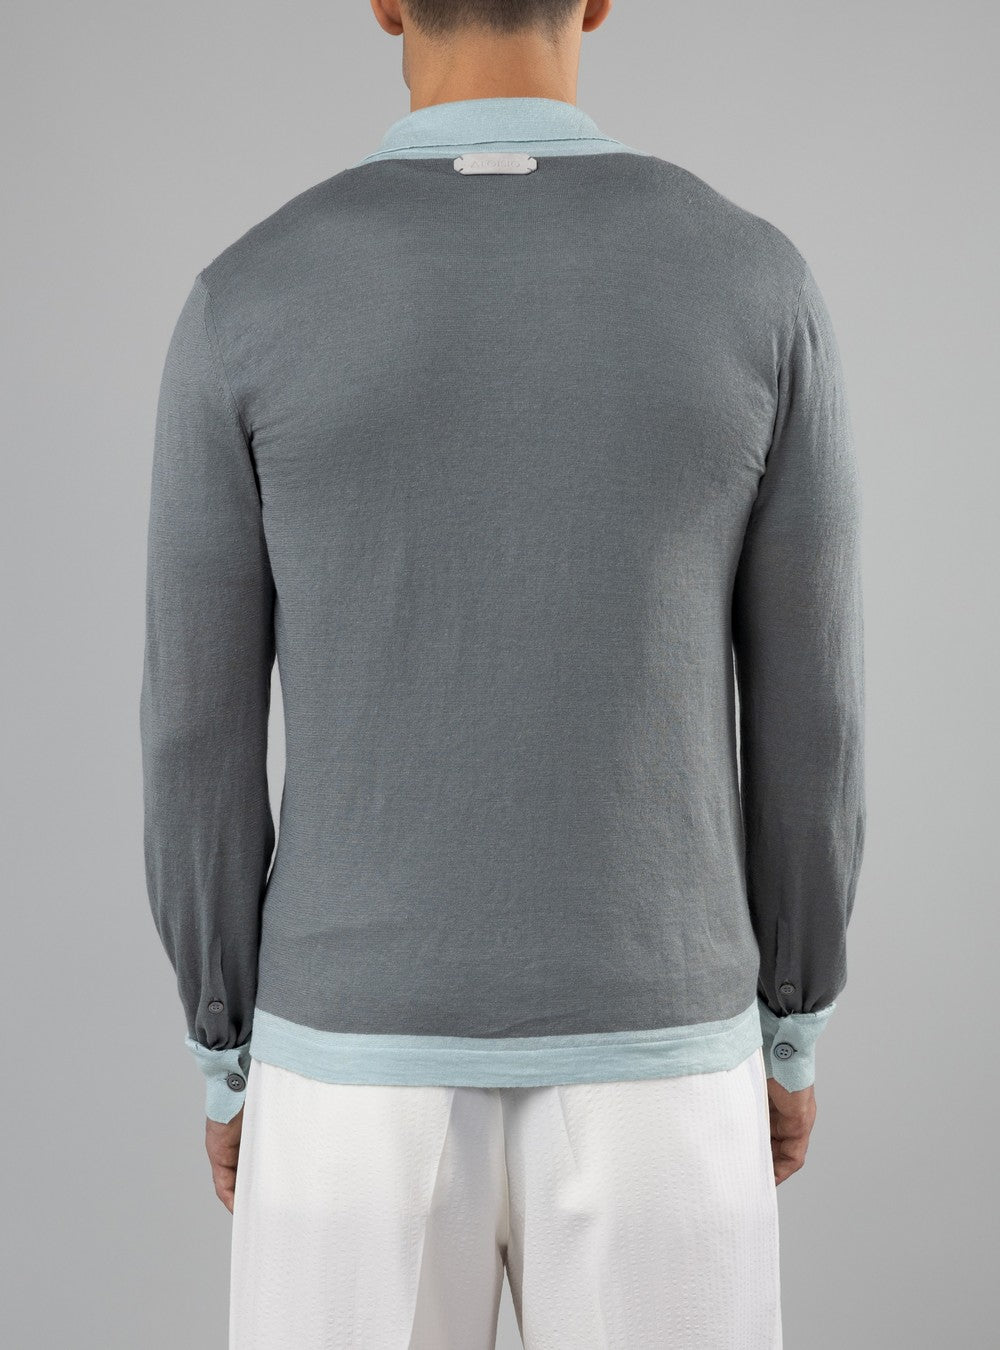 Triton Lightweight Button-Up Shirt in Cashmere/Linen/Silk, Sage